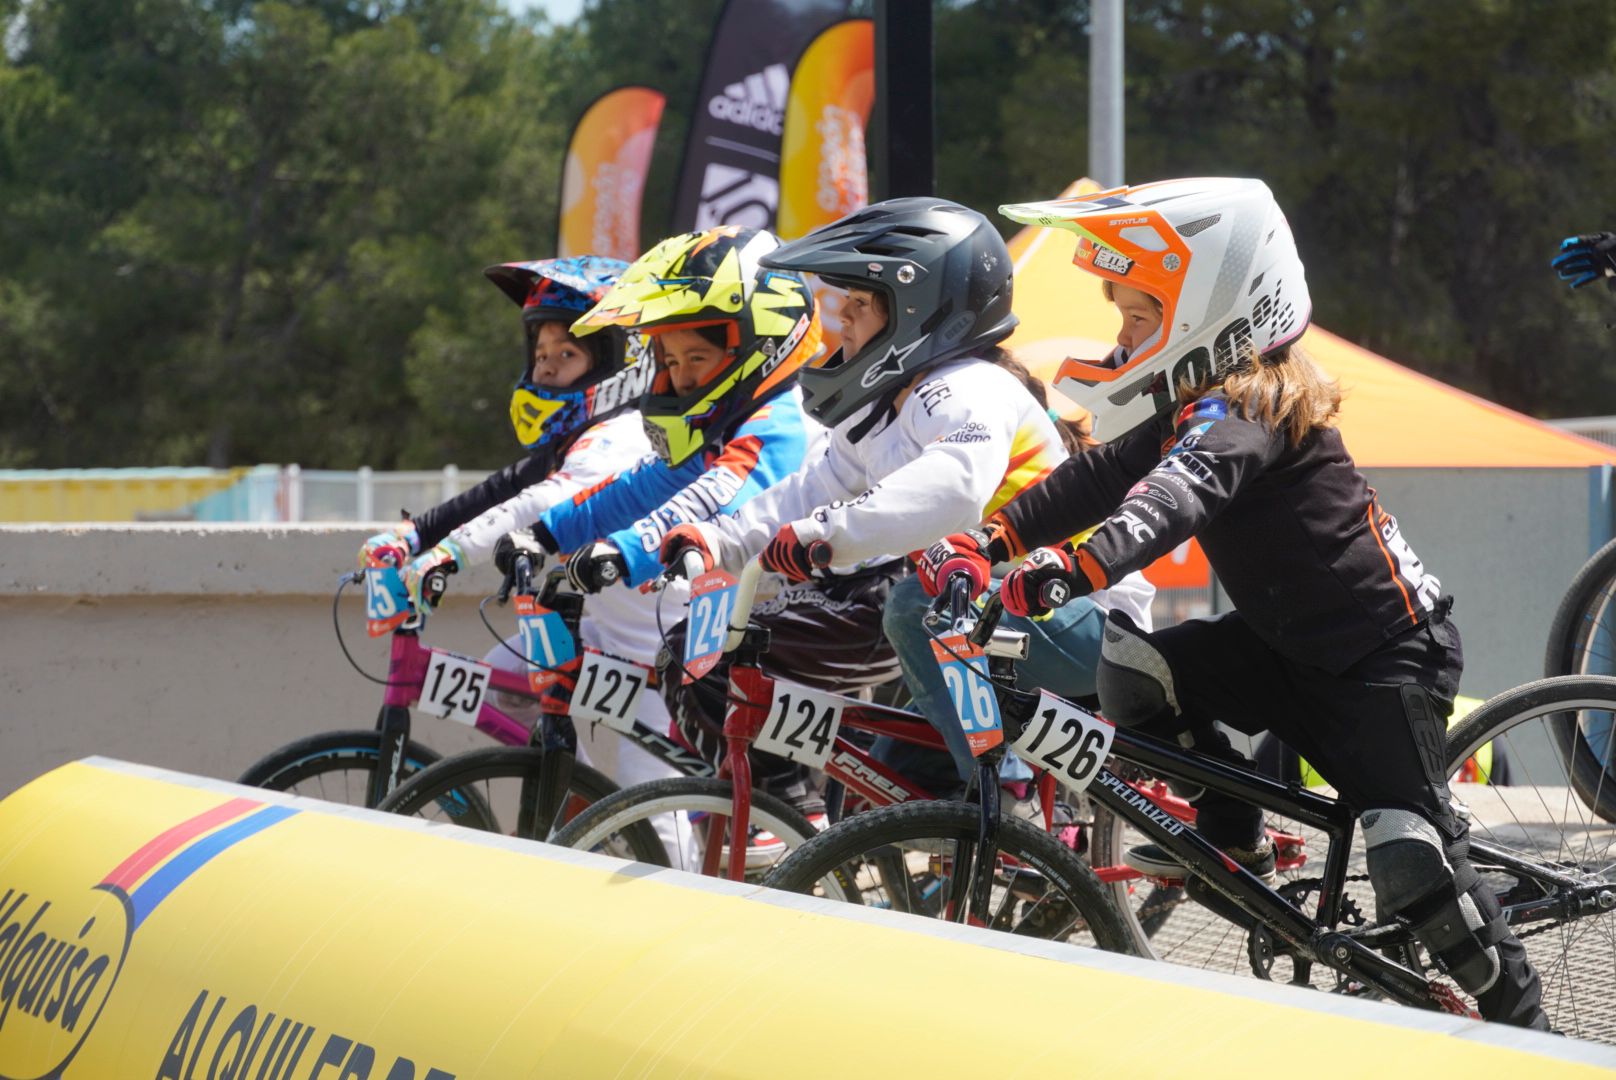 Más de 280 riders participan en la Copa de España de BMX de Zaragoza